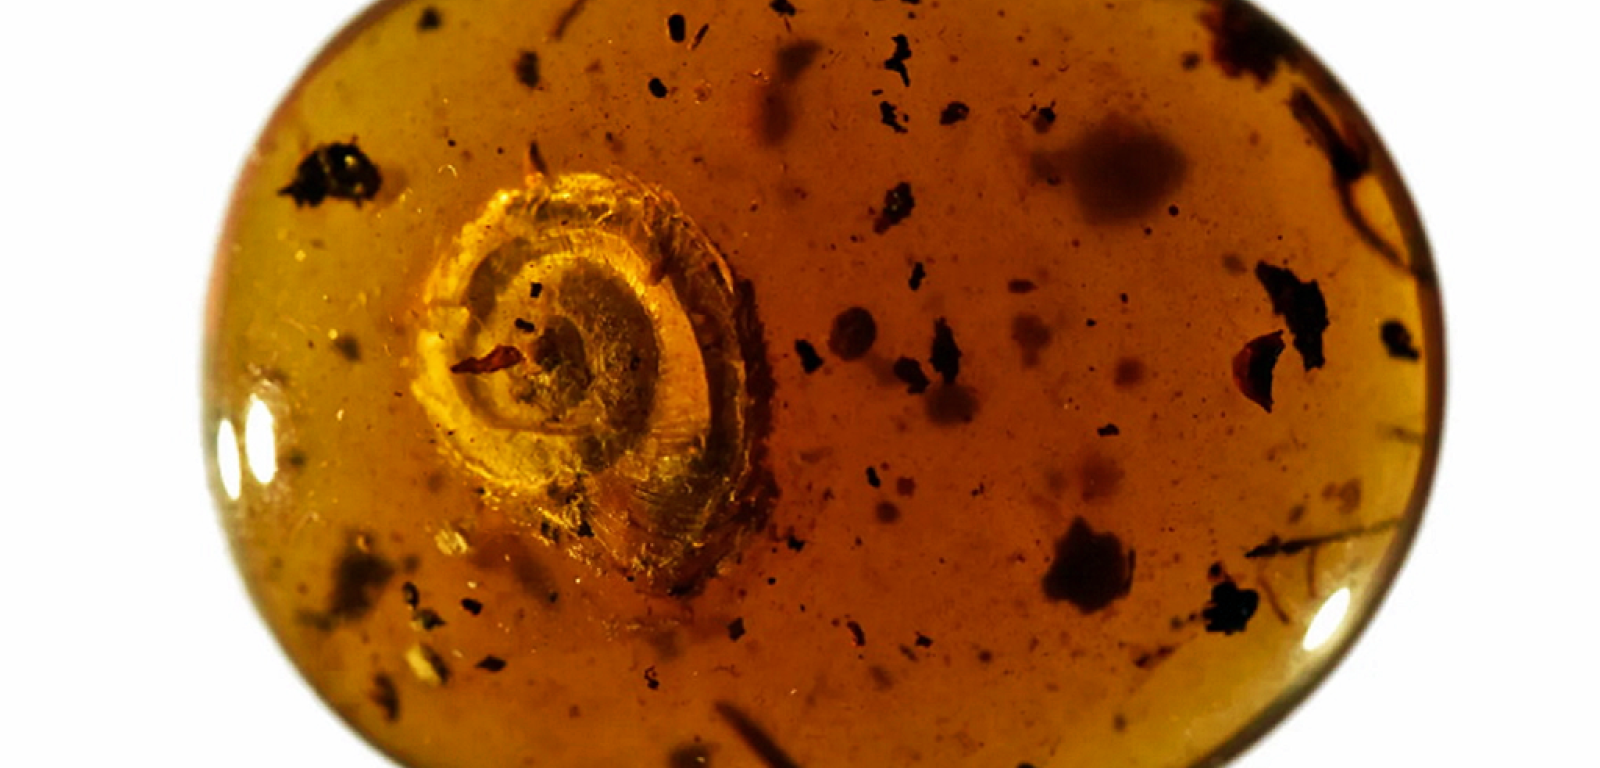 Naukowcy znaleźli włochatego ślimaka zatopionego w bursztynie. Szacują jego wiek na 99 mln lat.